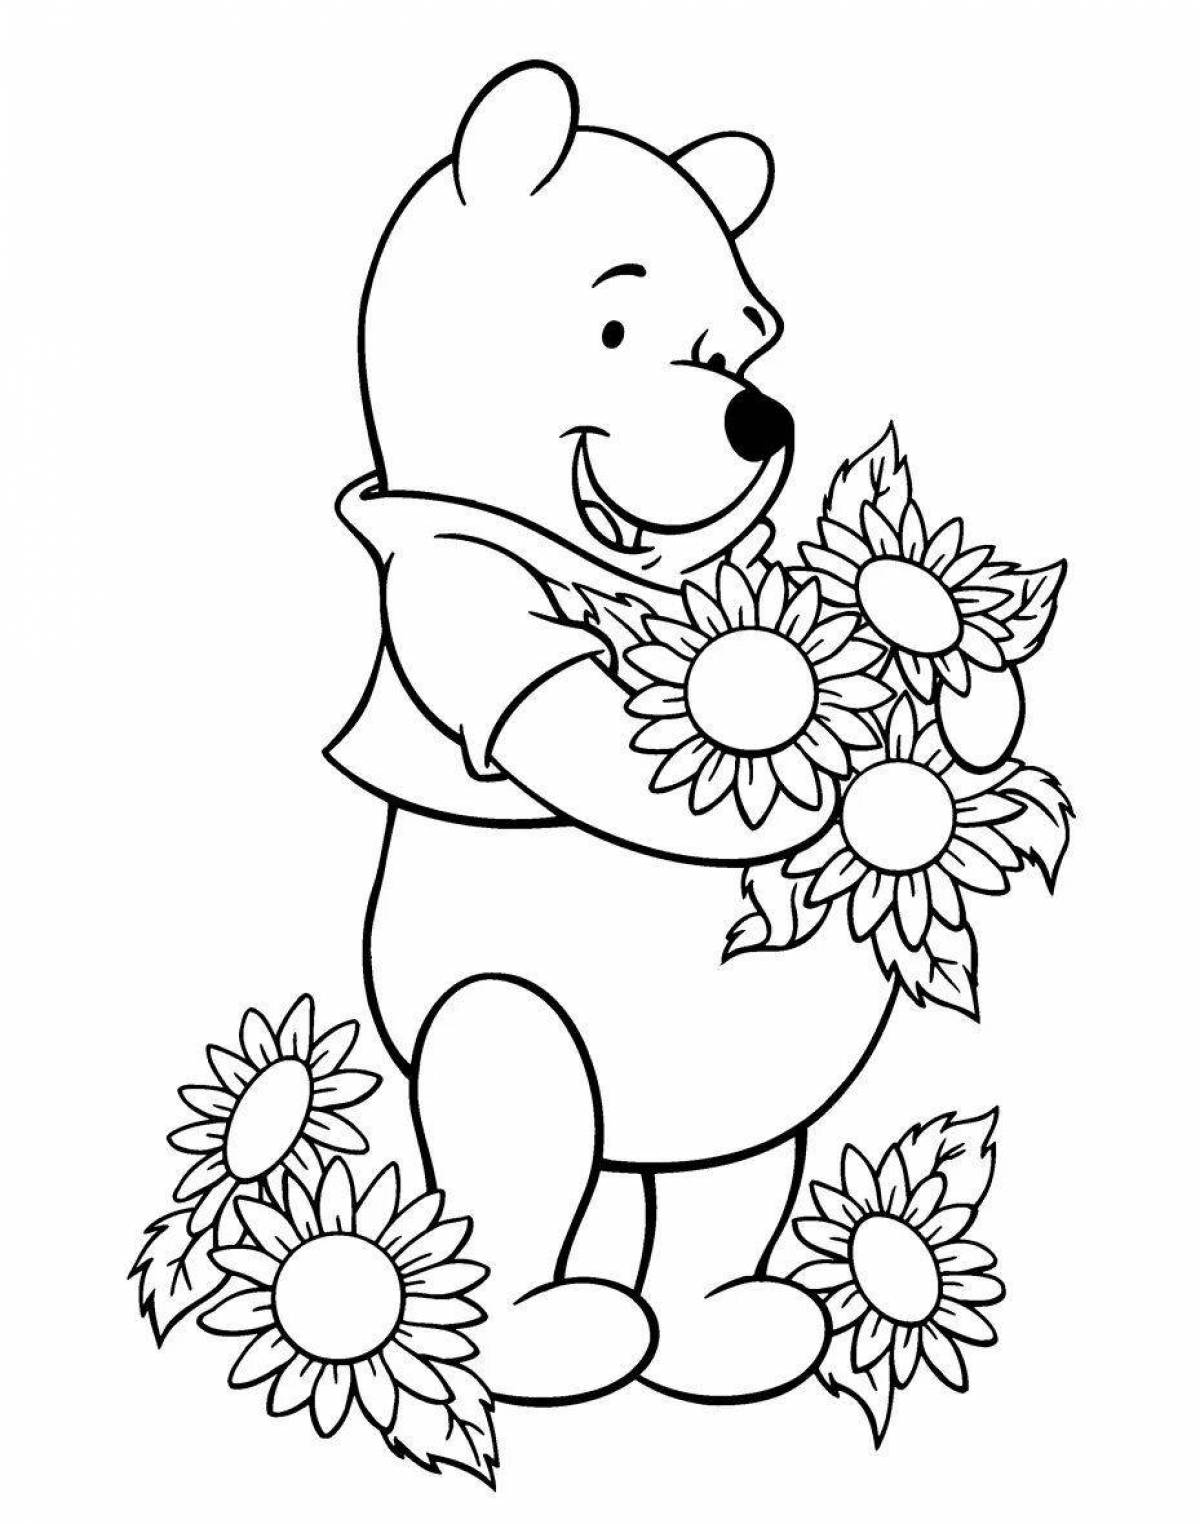 Милый медвежонок-раскраска для детей 5-6 лет